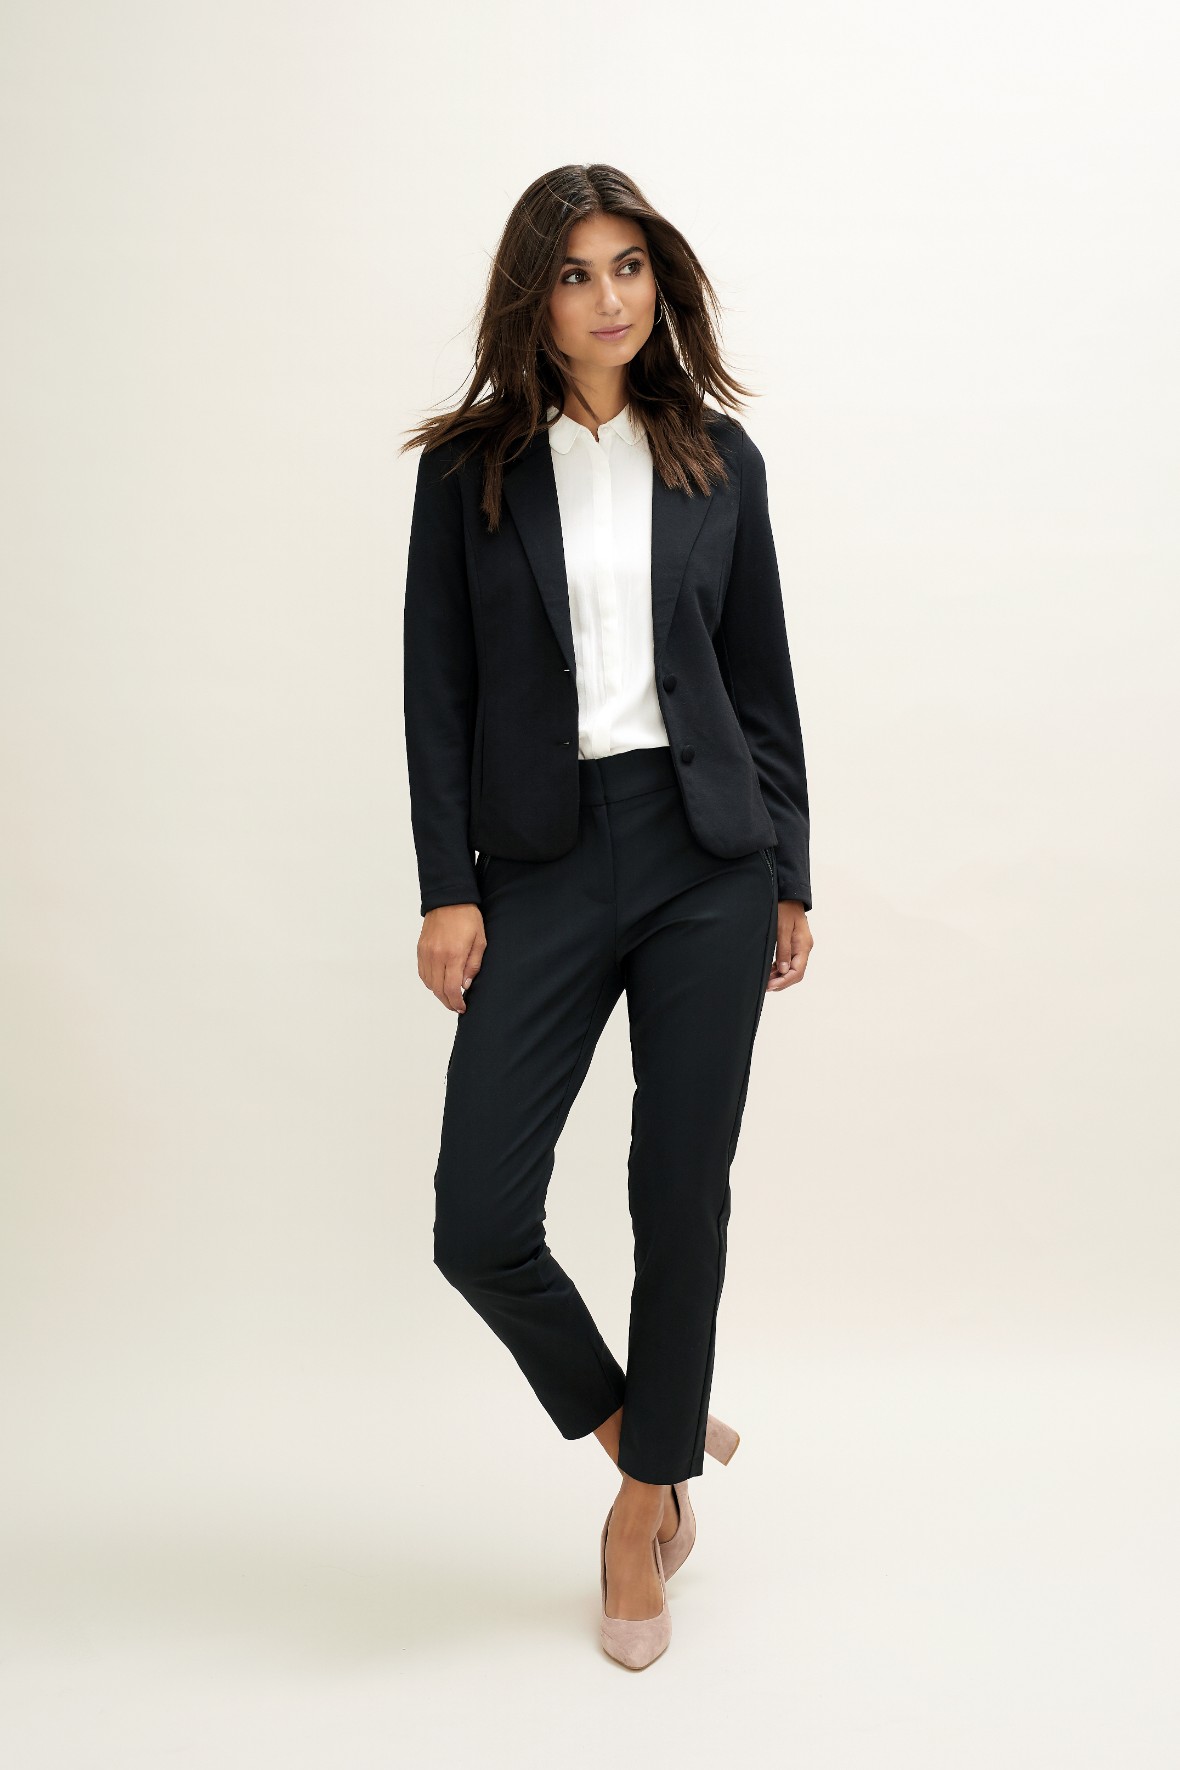 Soya Concept Daniela blazer jakke sort til damer - Hos